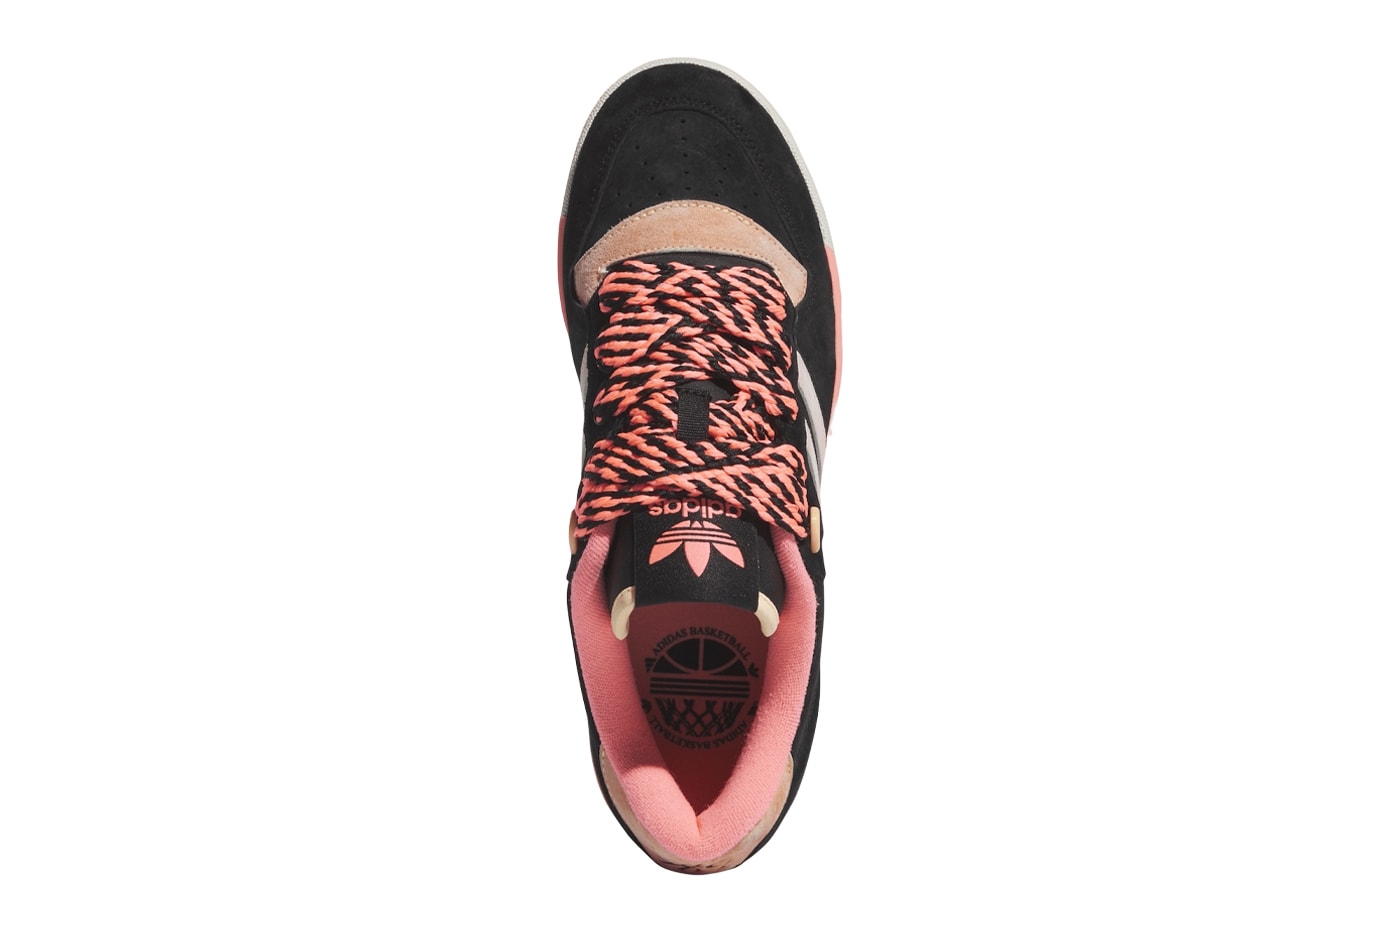 Энтони Эдвардс Появились последние кроссовки Adidas Rivalry IH7729, выпущенные кроссовки для скейтбординга розового и черного цвета с тремя полосками